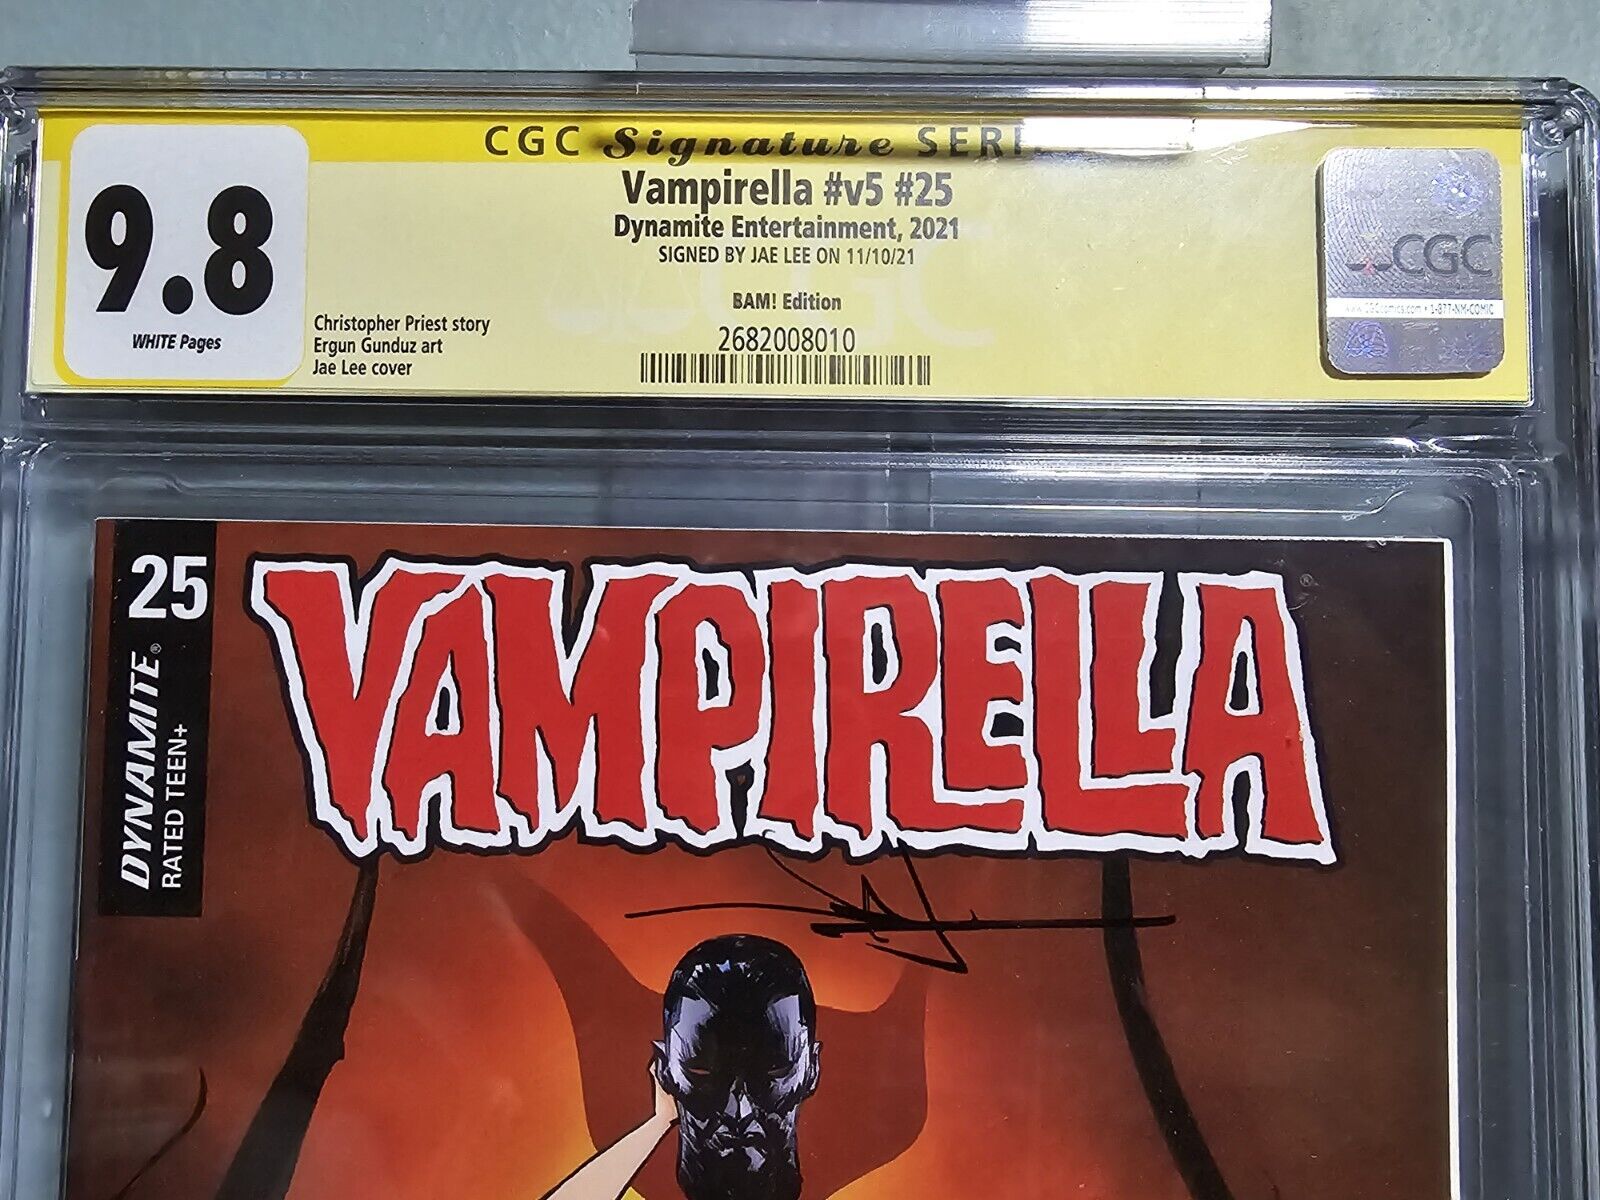 Vampirella Vol 5 #25 CGC 9.8 NM/MT SS Signed Jae Lee Bam Exclusive Cover